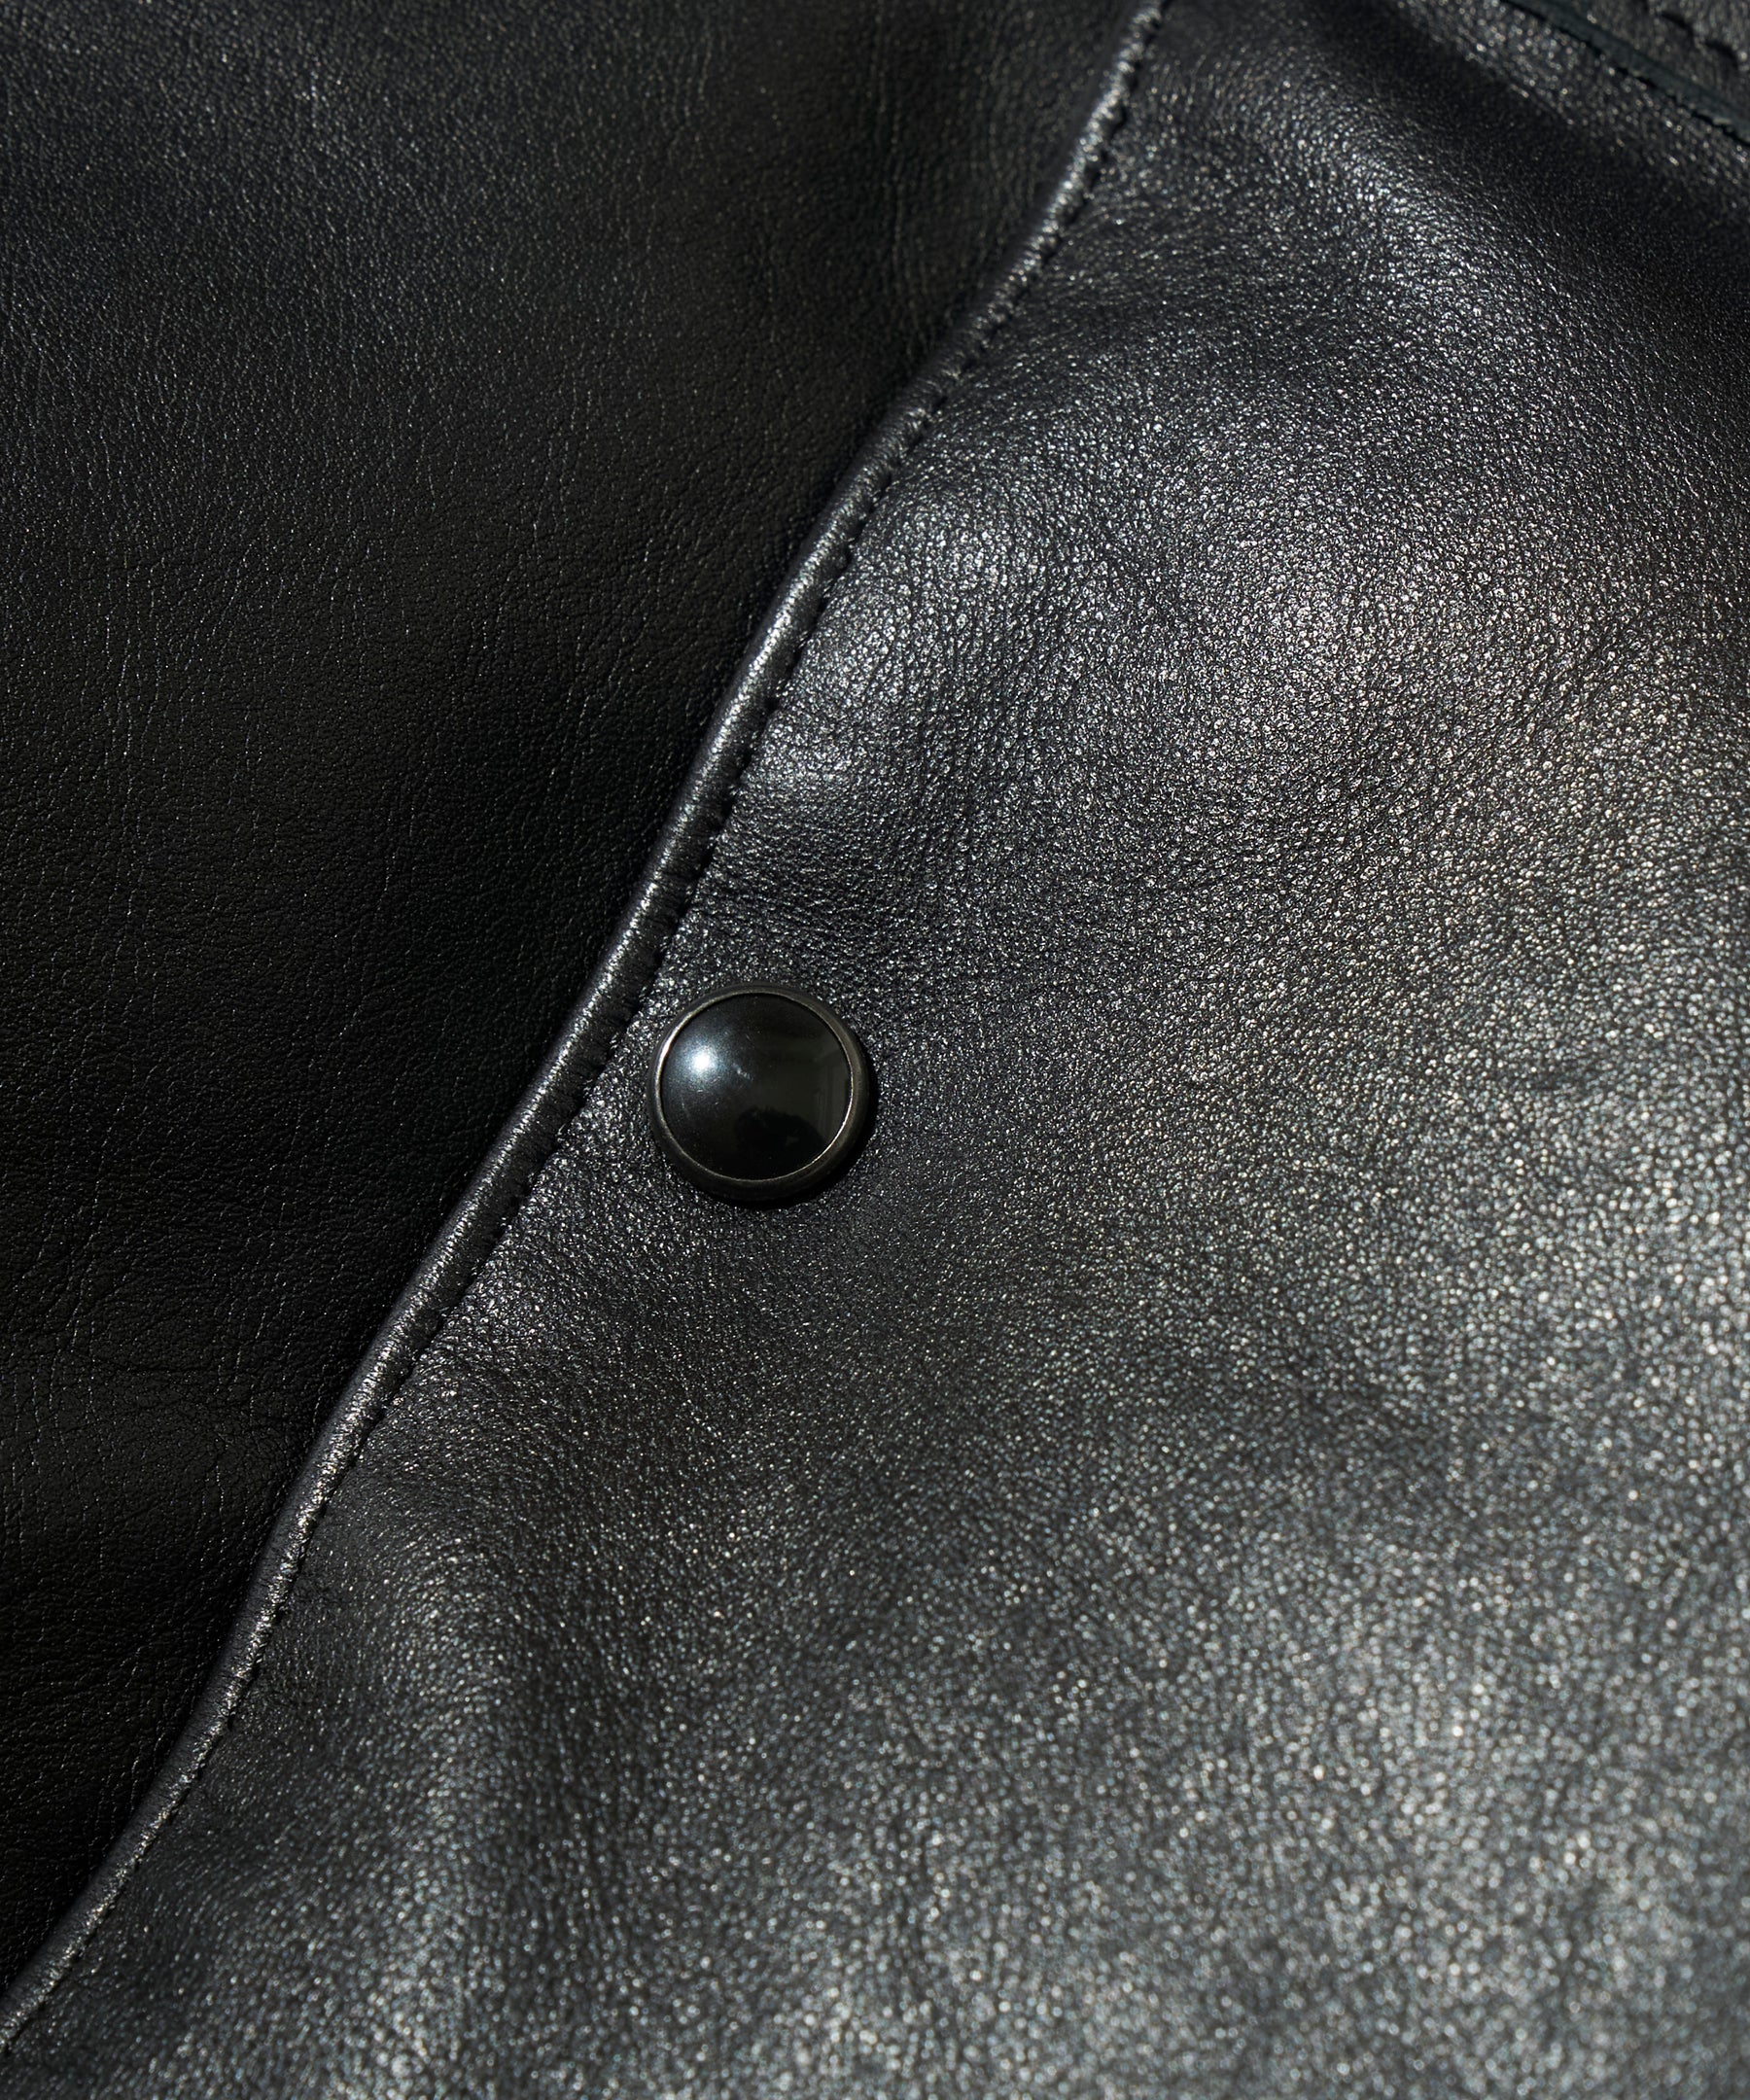 【2023AW】LCV (Leather Christy Vest)